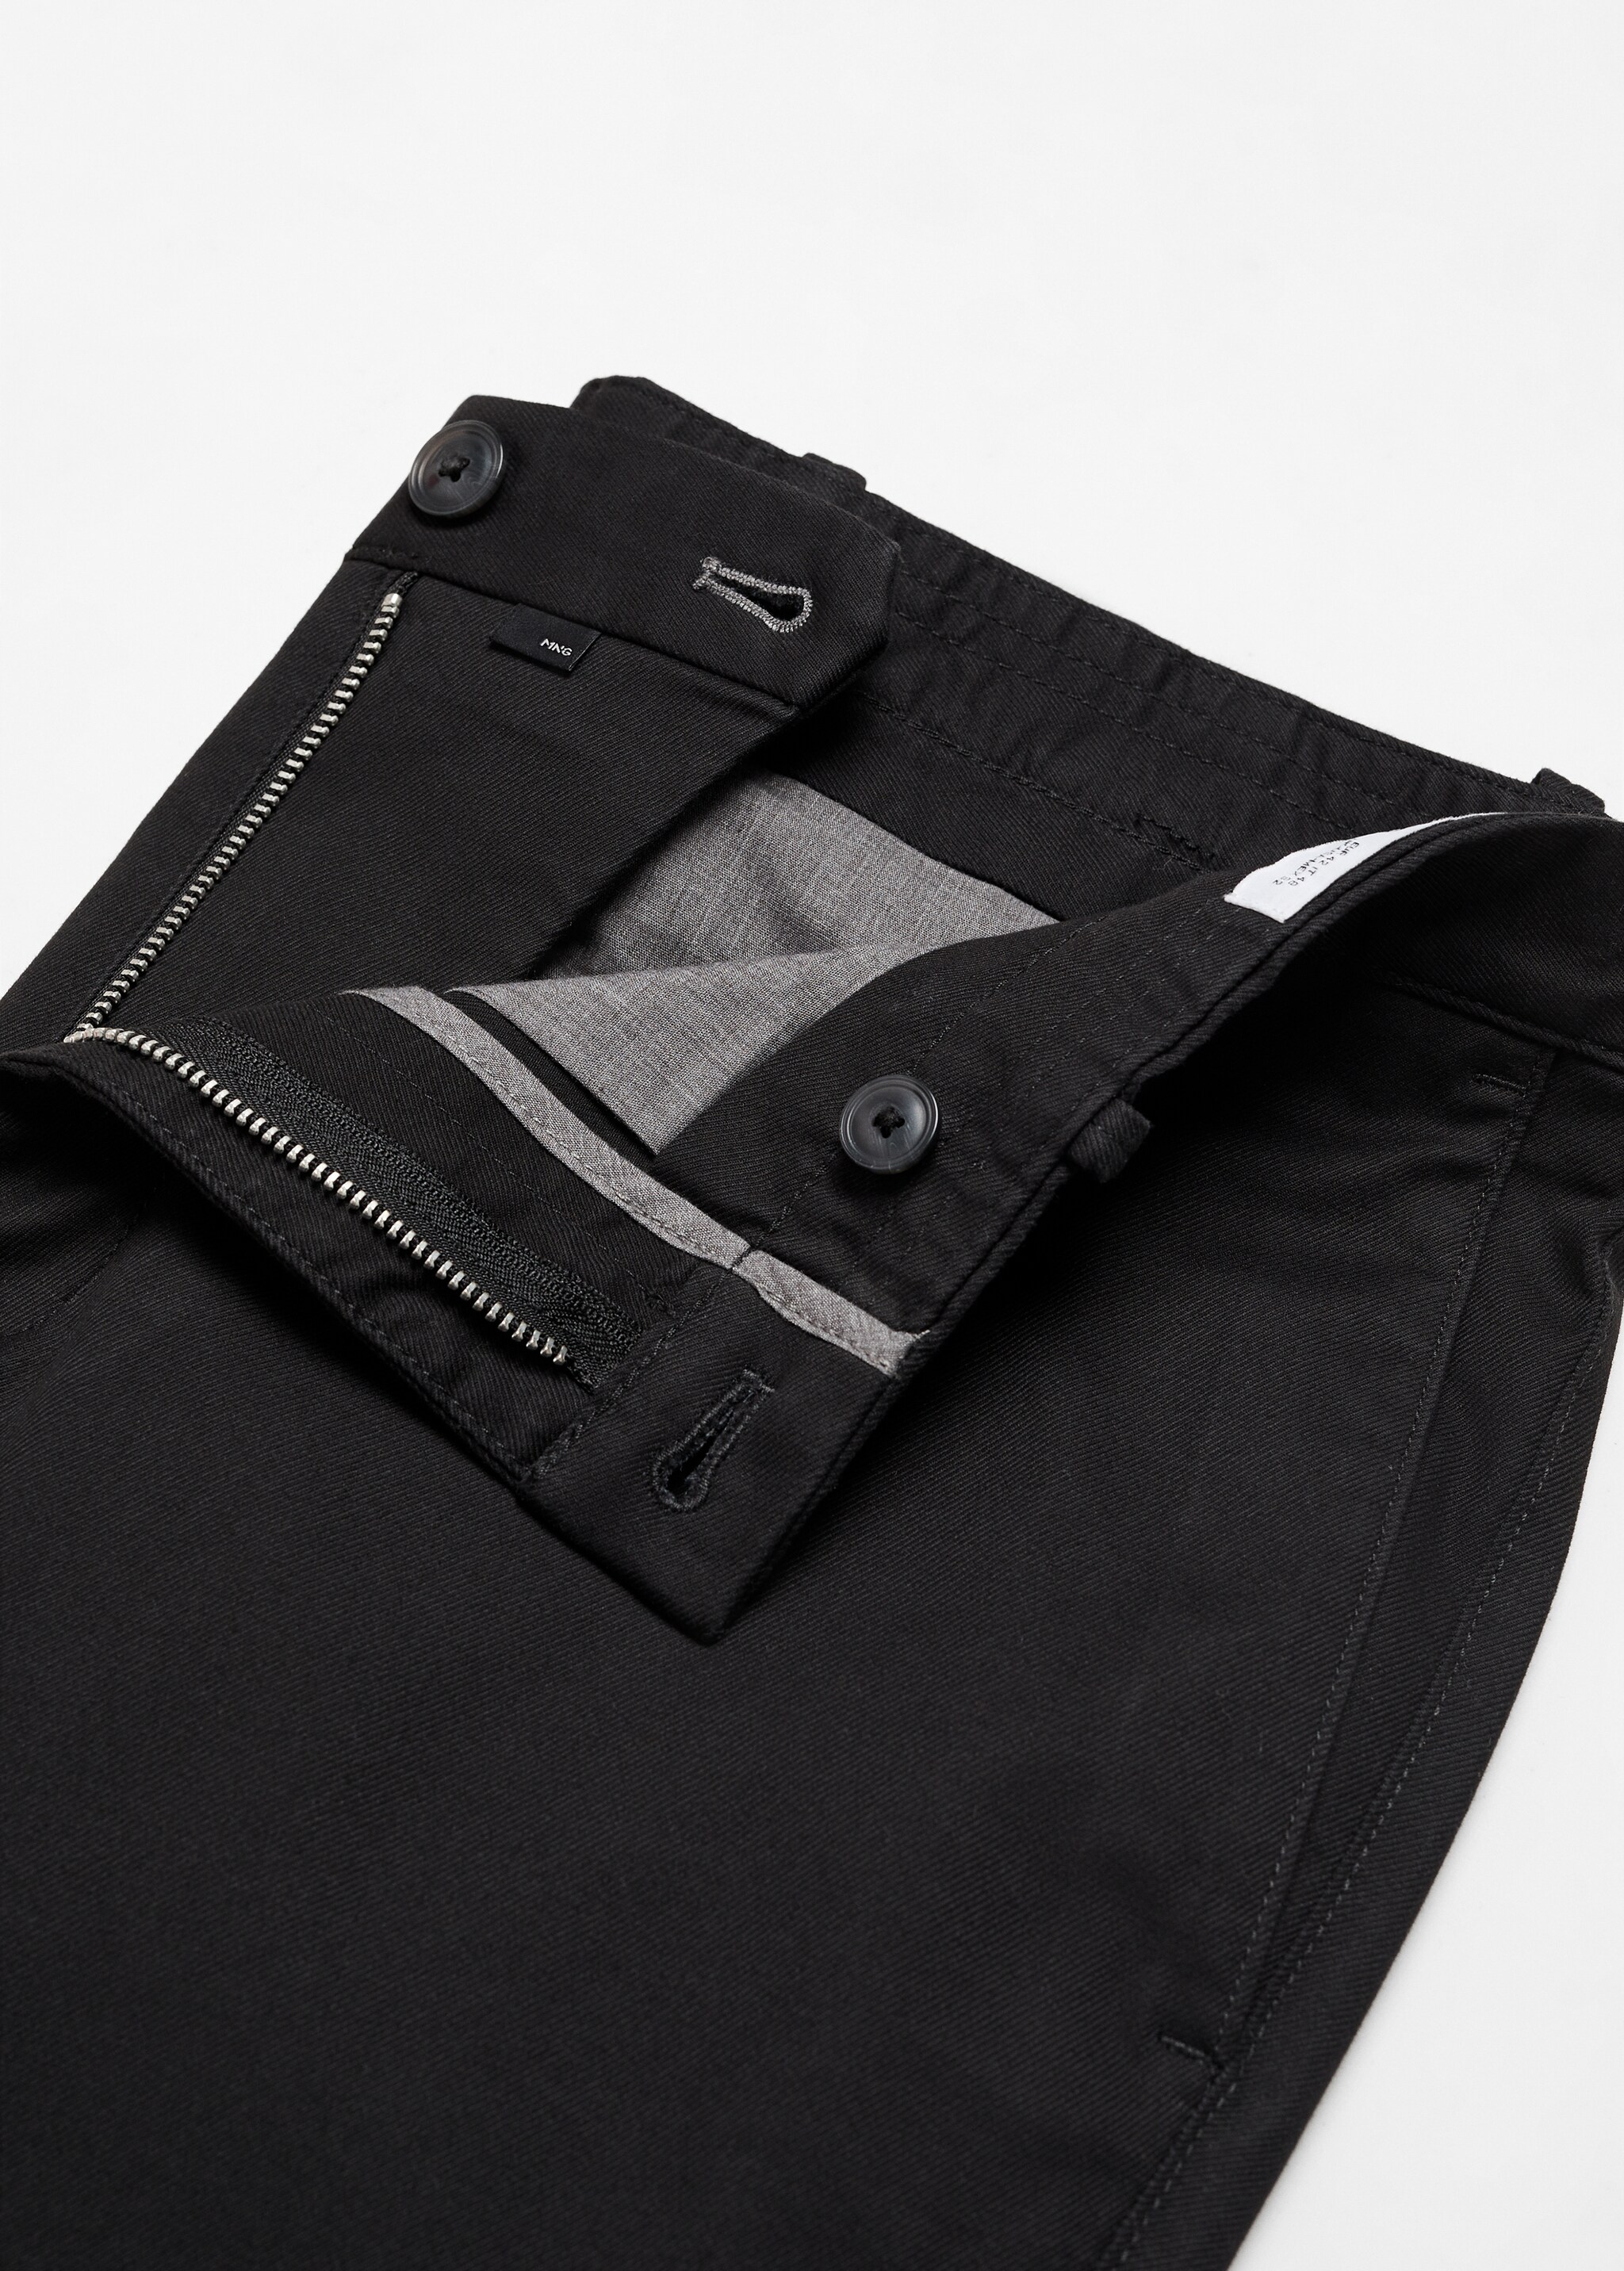 Spodnie chinos slim fit z diagonalu - Szczegóły artykułu 8